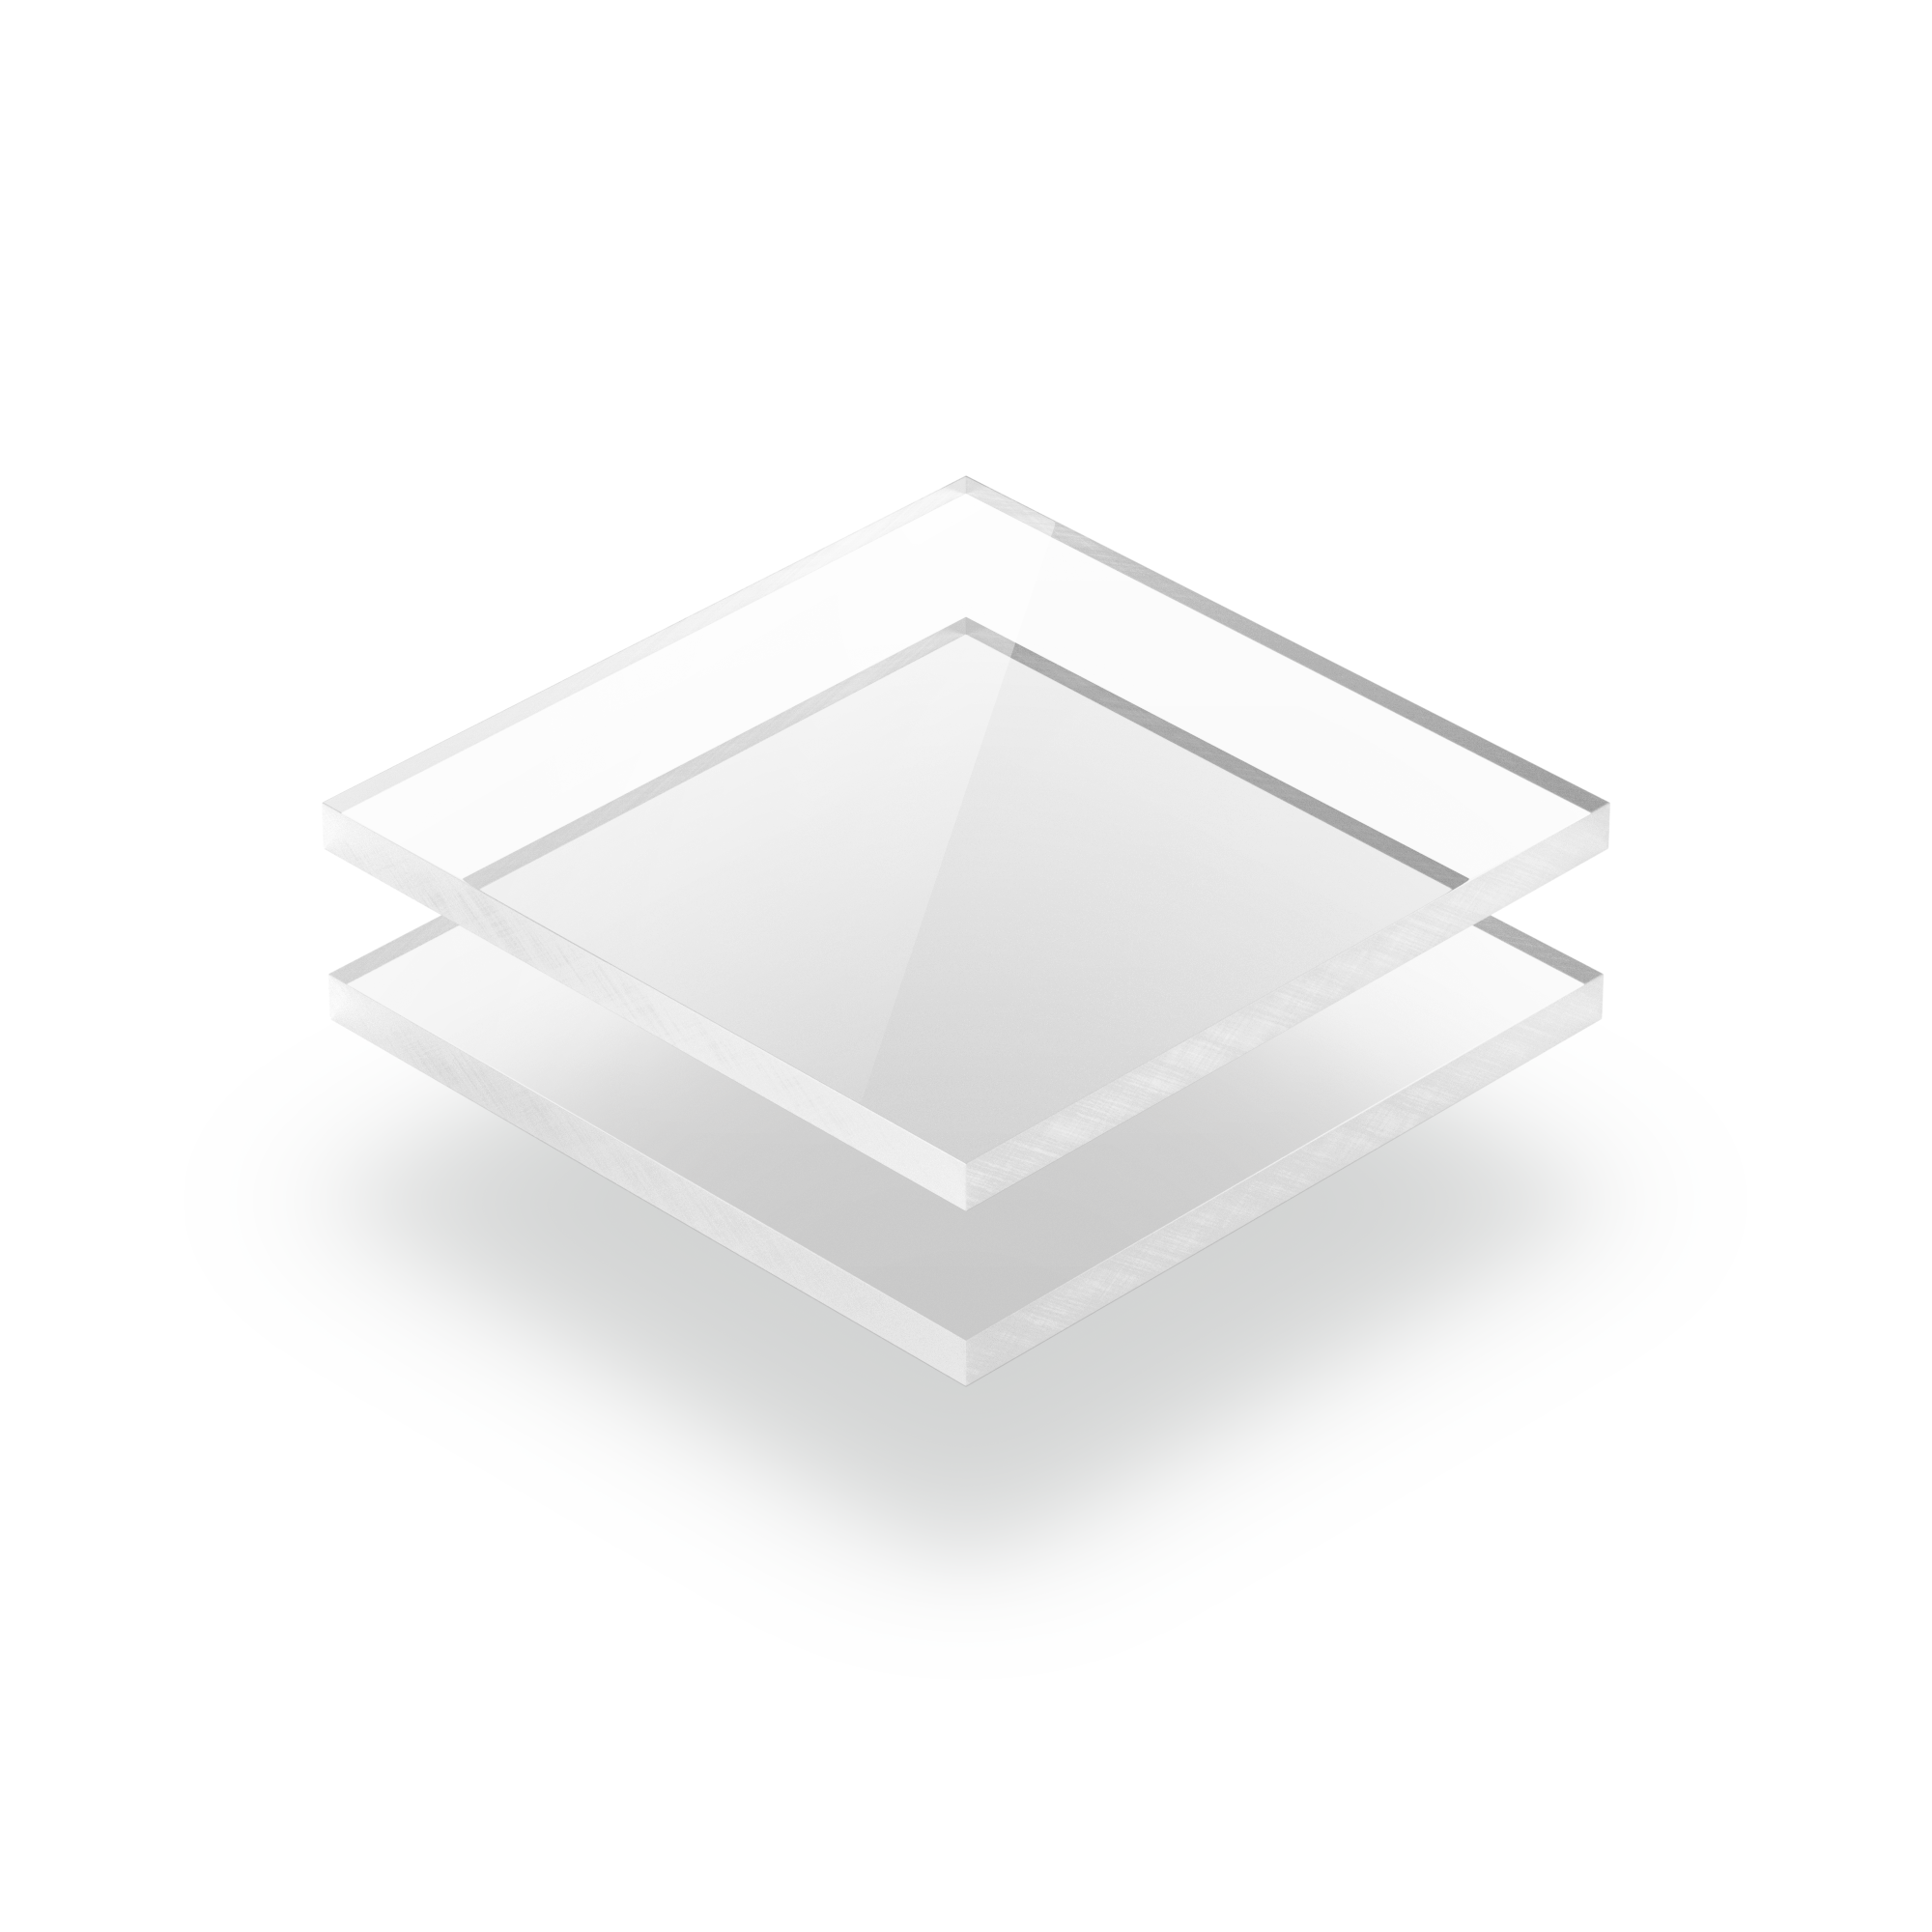 2-8mm Acrylglas Scheibe Plexiglas ® Polierte Kanten Zuschnitt NEU 